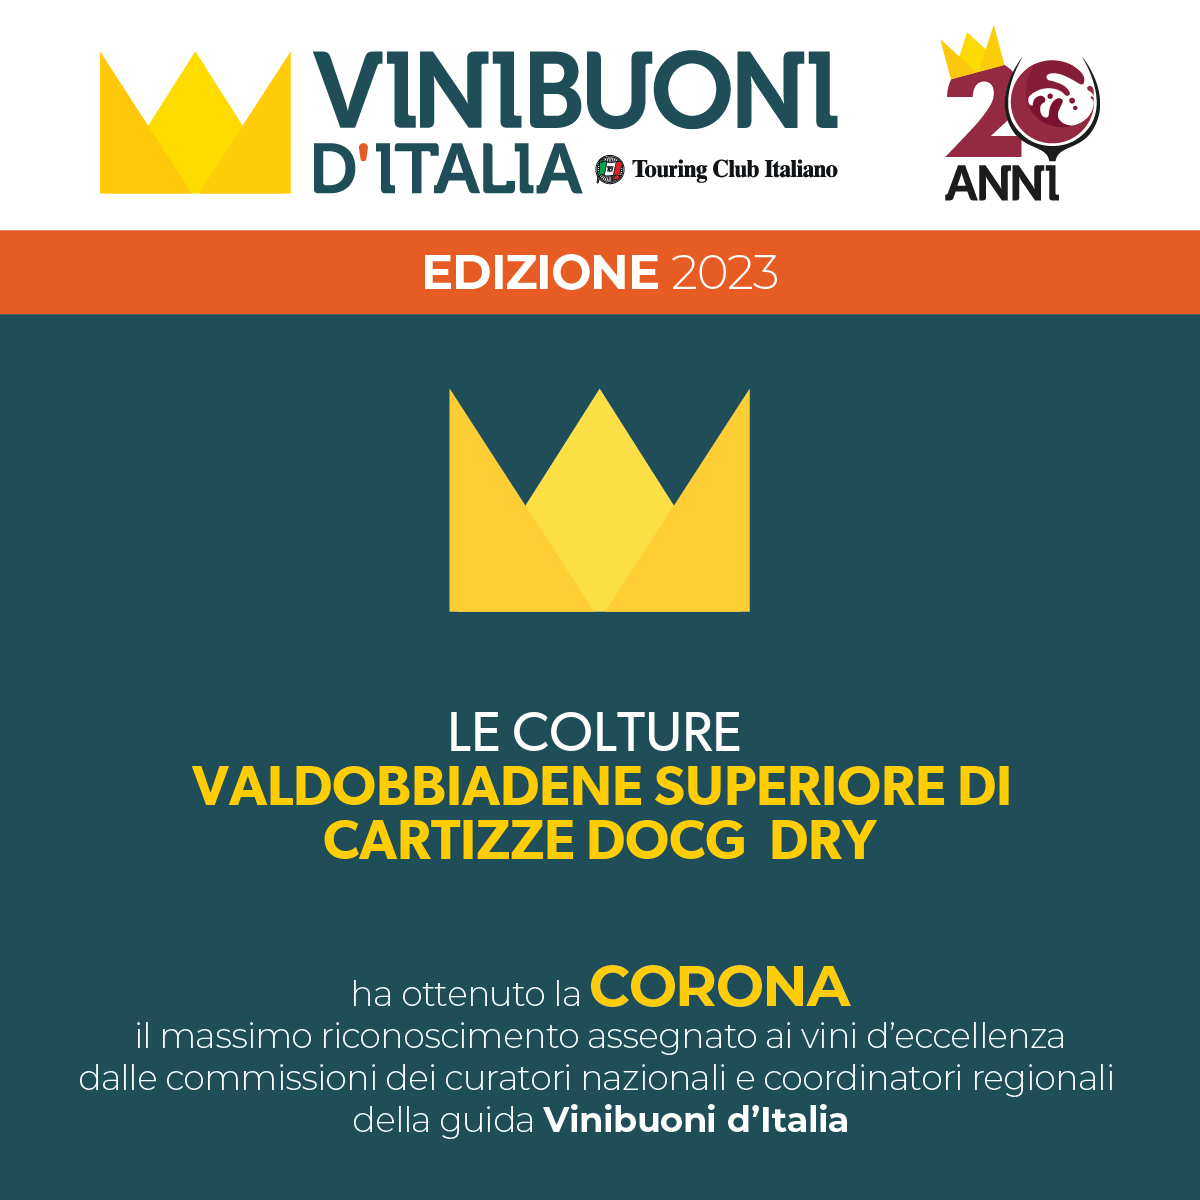 Vinibuoni d'Italia gave the crown to our Valdobbiadene Superiore di Cartizze DOCG Dry